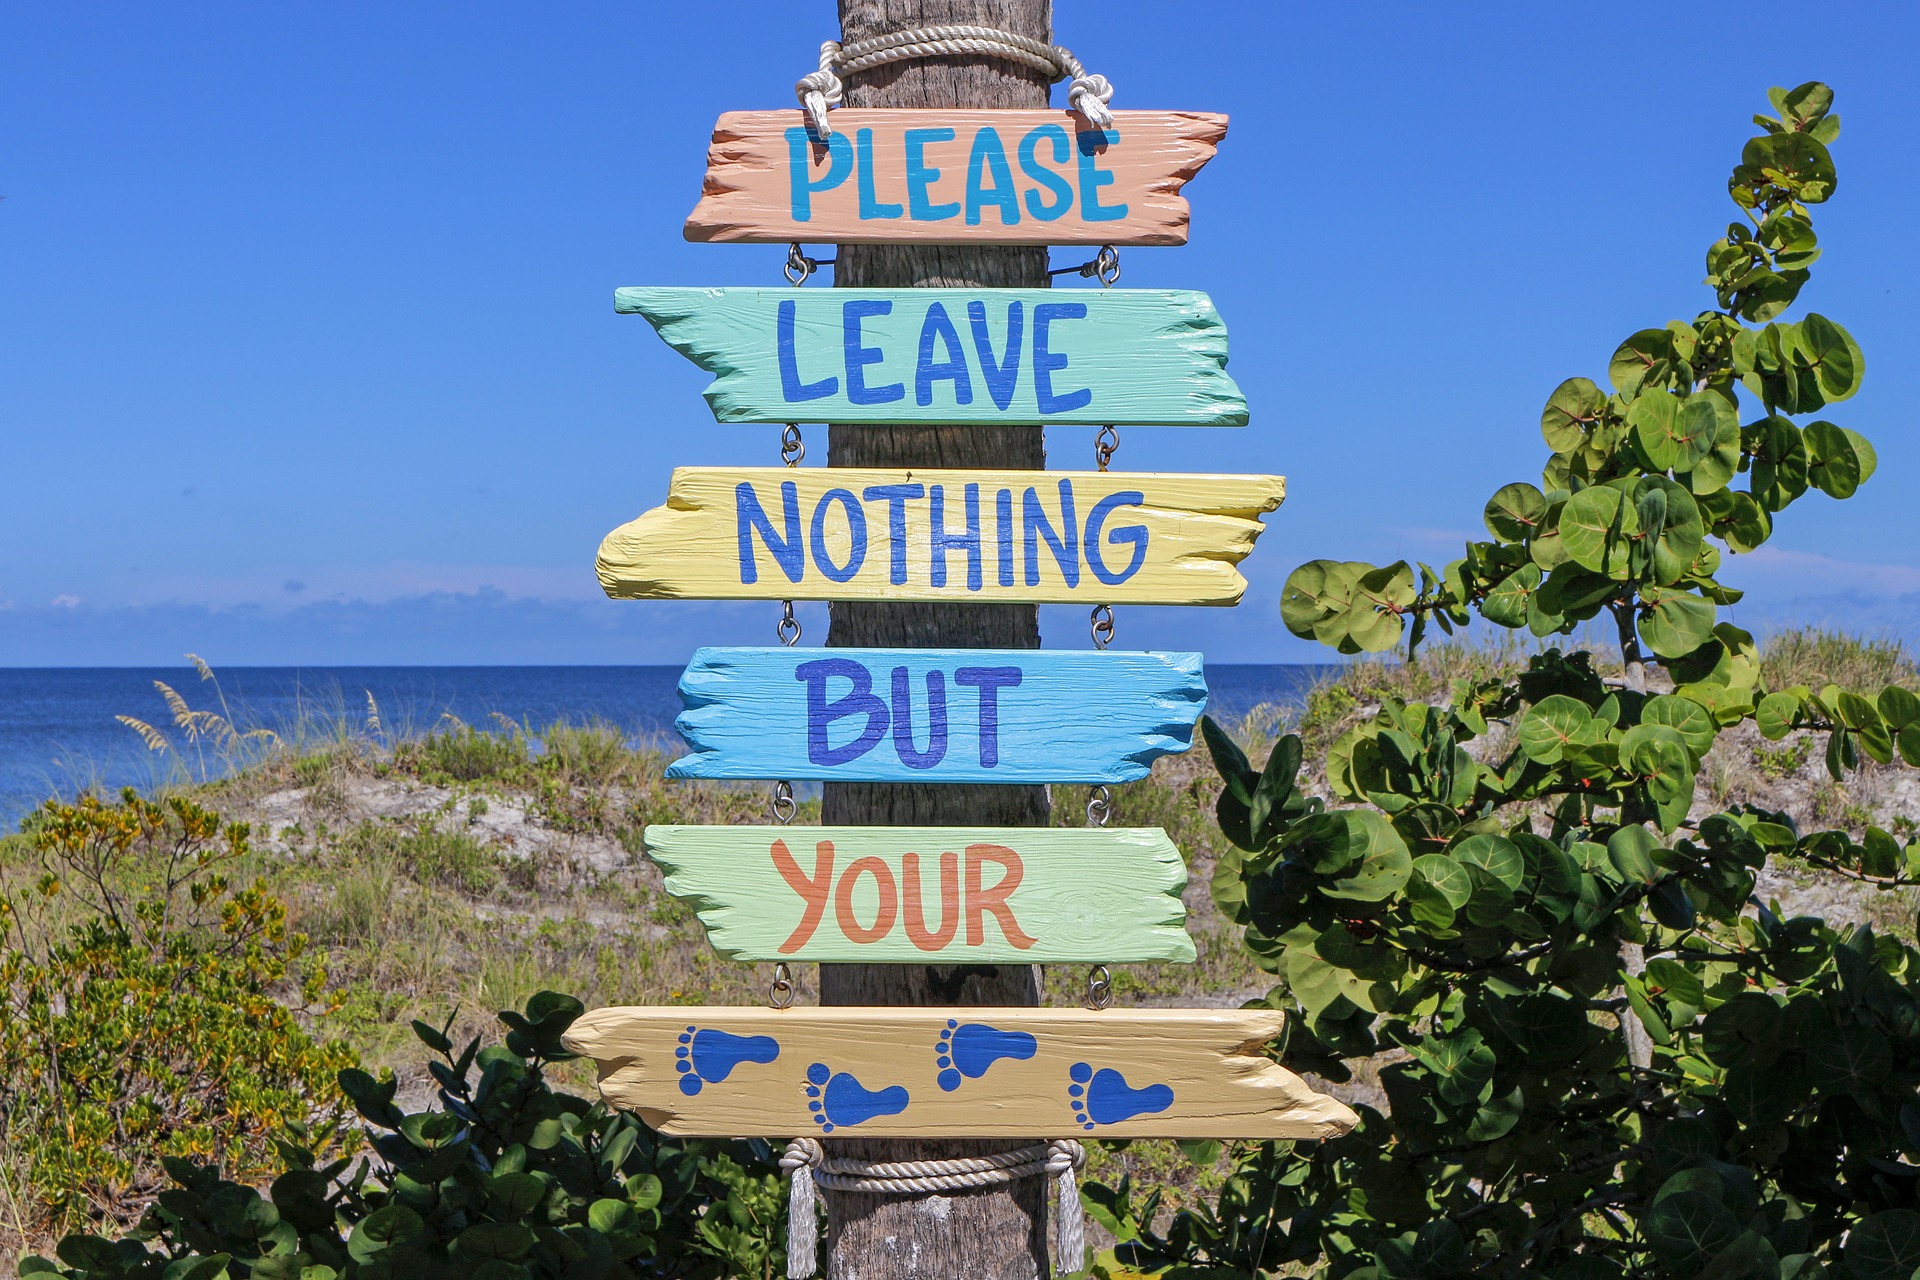 Schild mit der Aufrschirift: "Please leave nothing bur your" der unterste Teil des Schilds zeigt Fußabdrücke. Das Schild ist mitten im Grünen und dahinter sieht man das Meer.